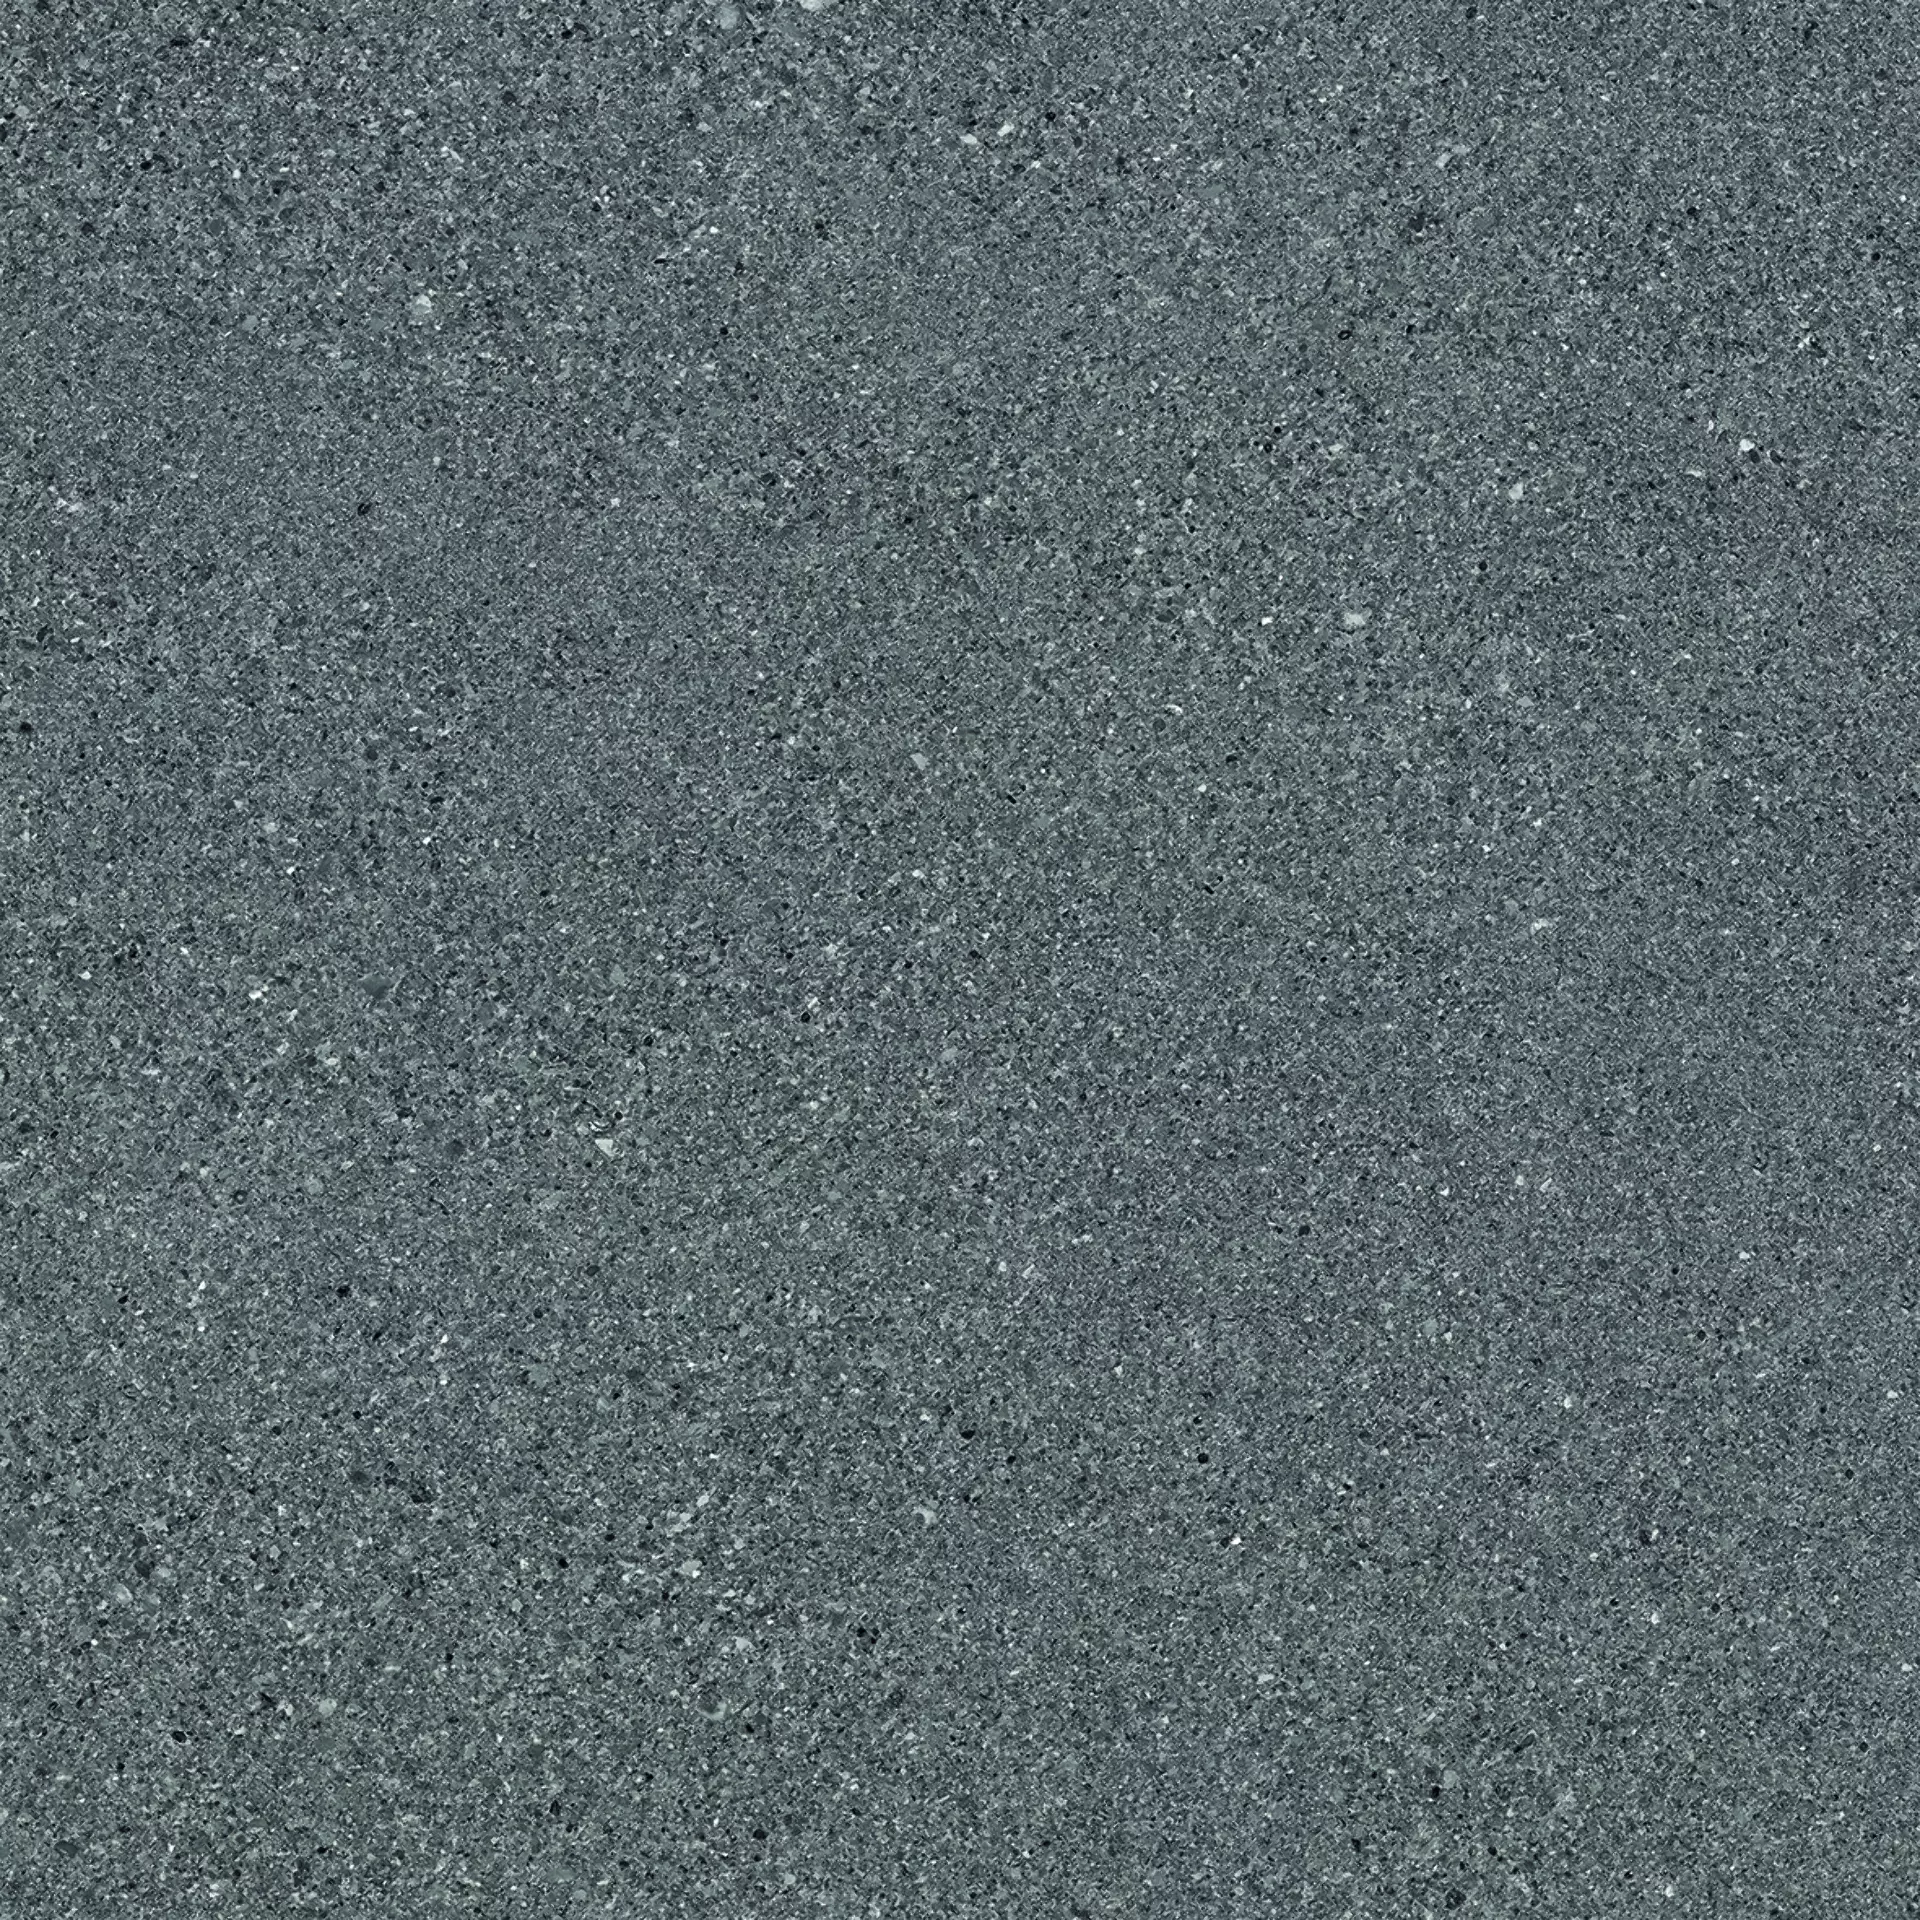 Ergon Grain Stone Fine Grain Dark Naturale E09Q 60x60cm rectified 9,5mm